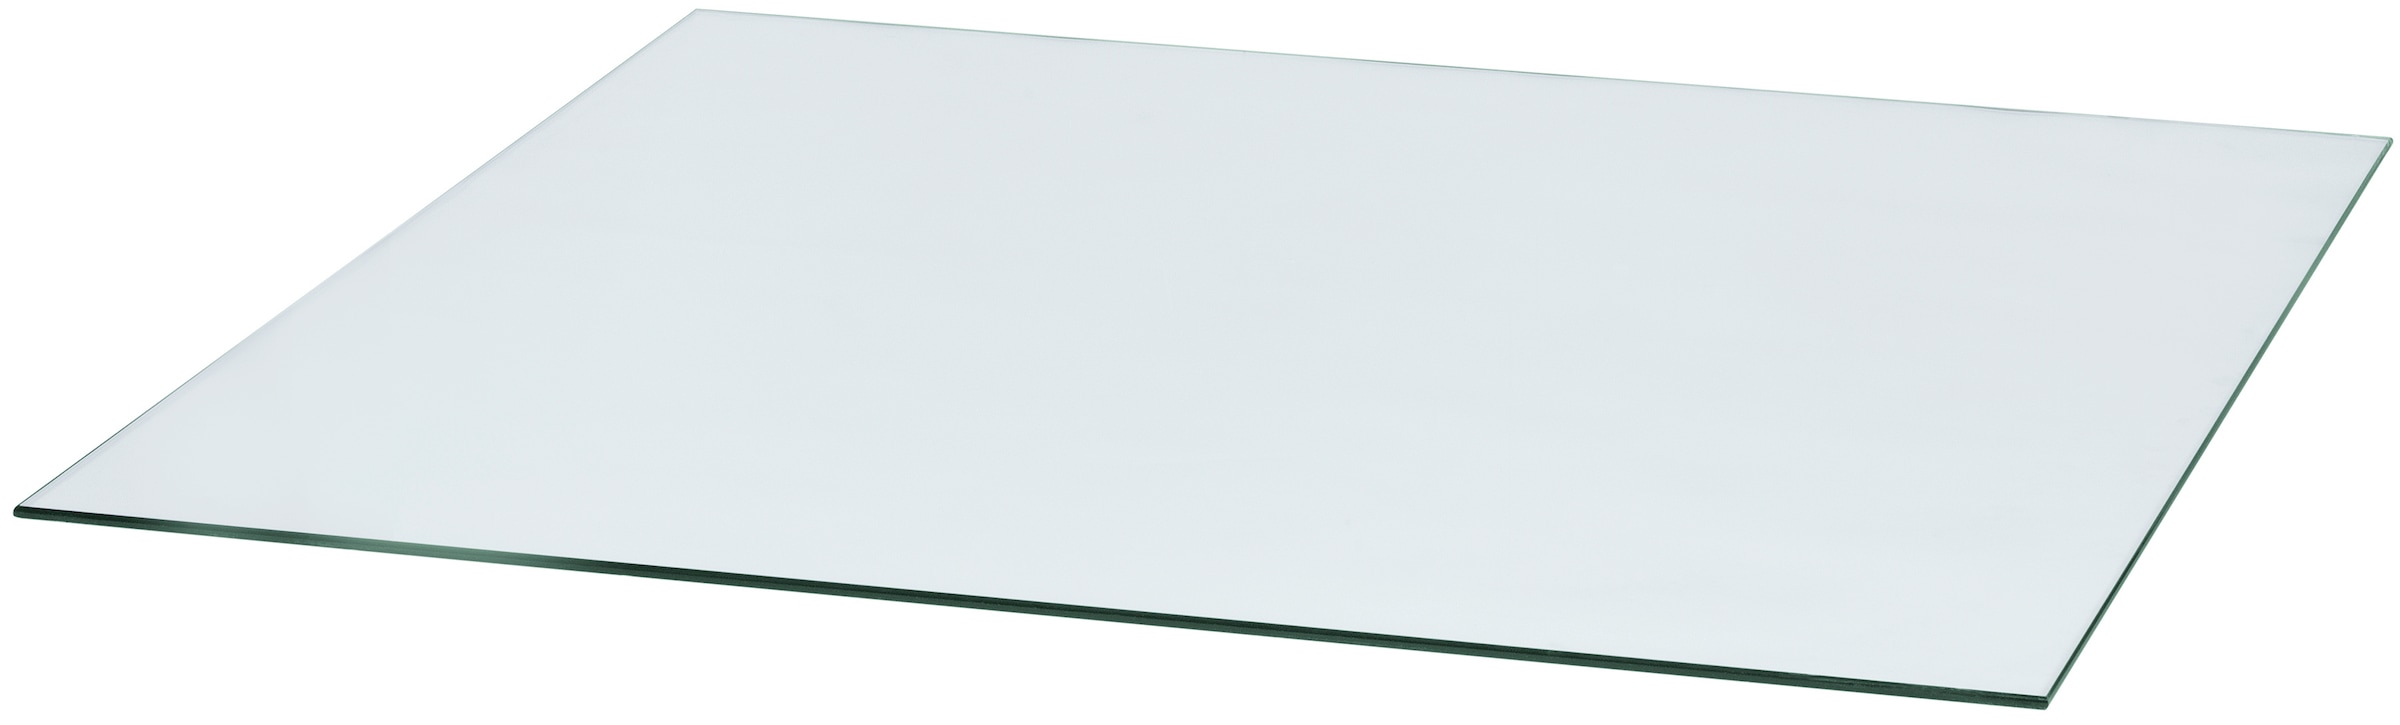 Bodenschutzplatte, Quadratisch, 110 x 110 cm, zum Funkenschutz